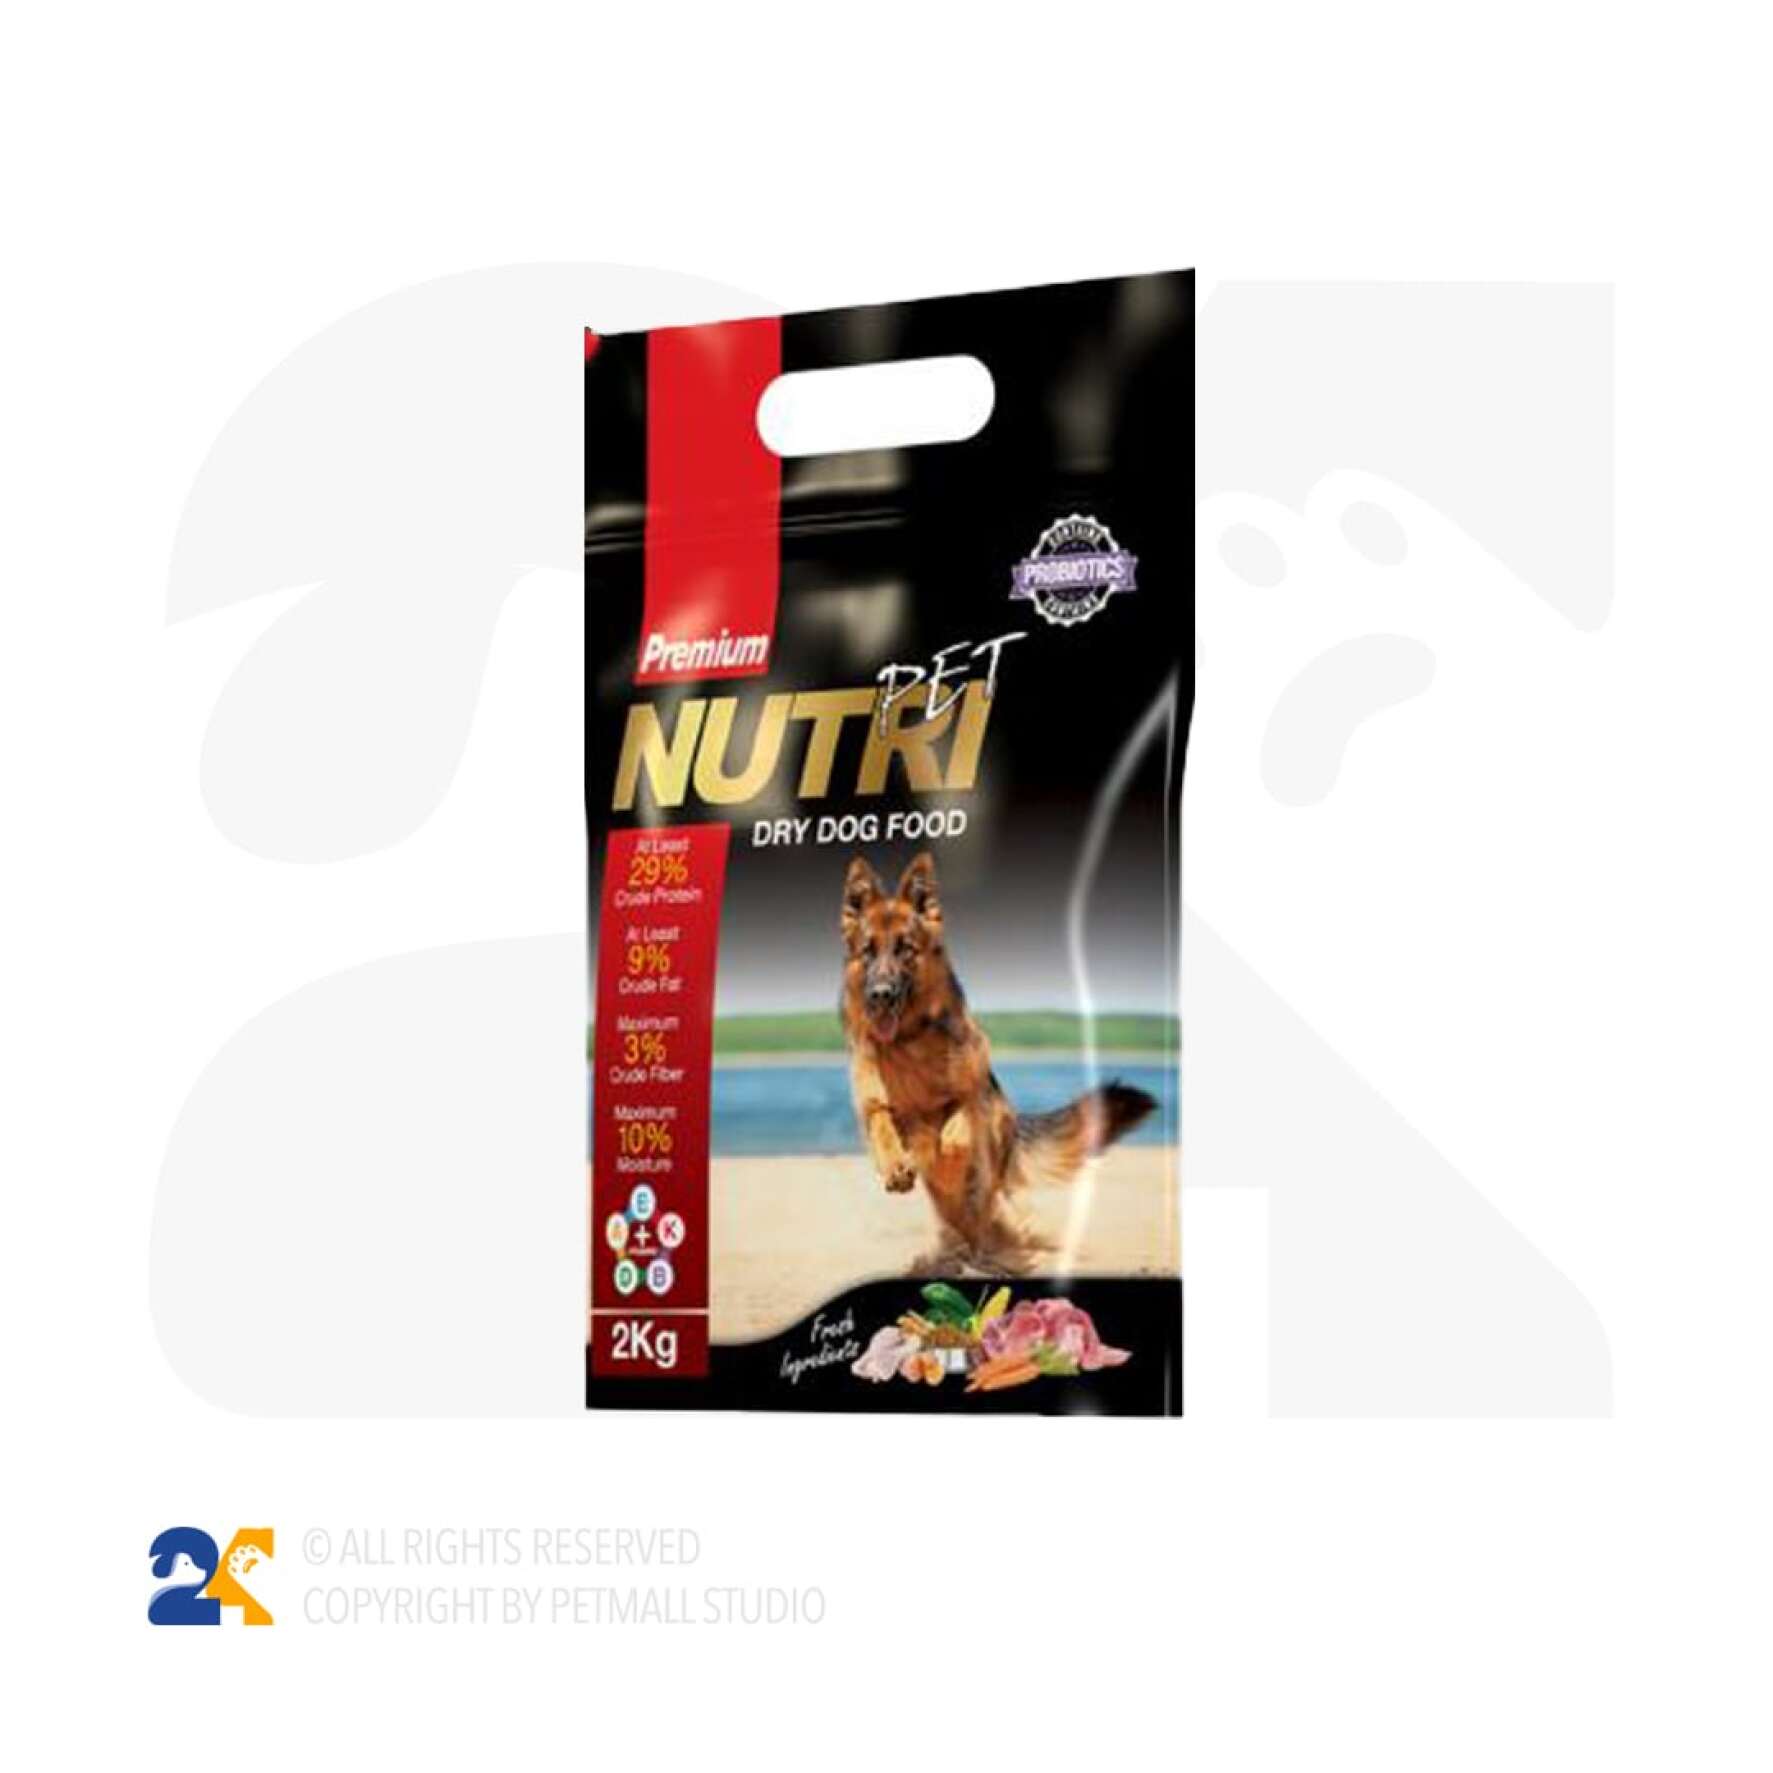  غذای سگ پروبیوتیک نوتری مدل Premium 29 Percent وزن 2 کیلو 